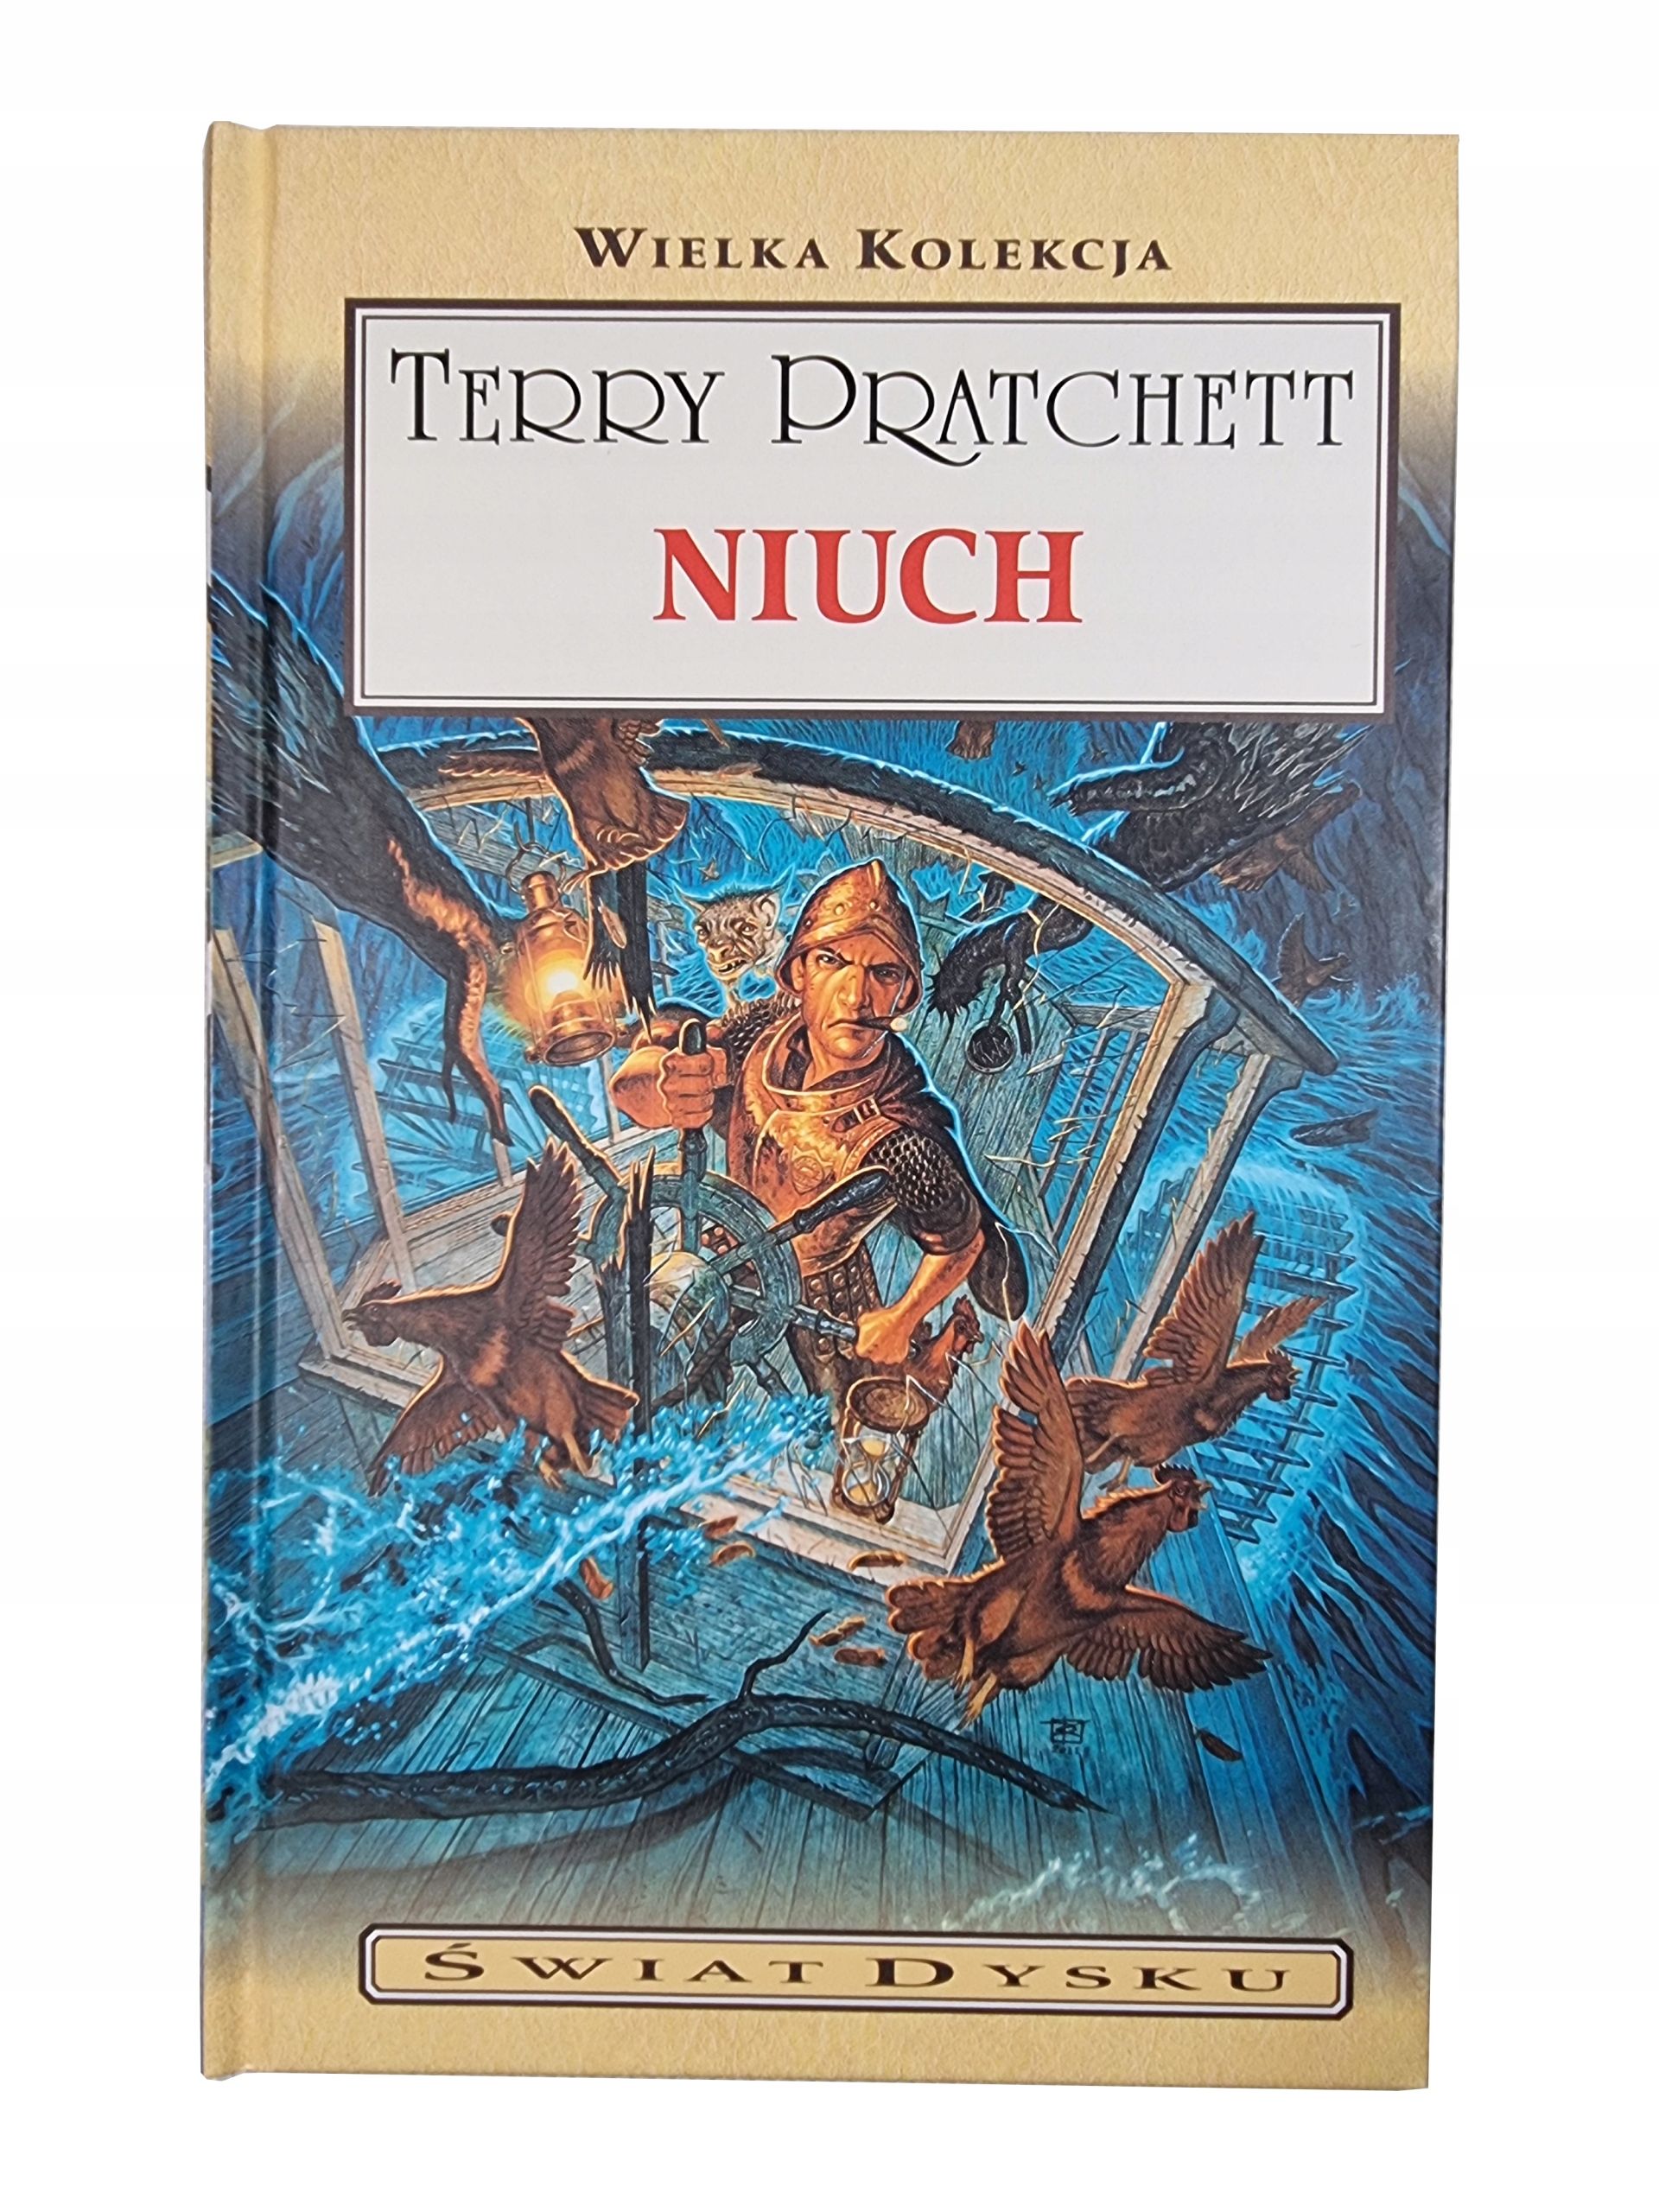 Niuch / Wielka Kolekcja Świat Dysku / Twarda / Terry Pratchett